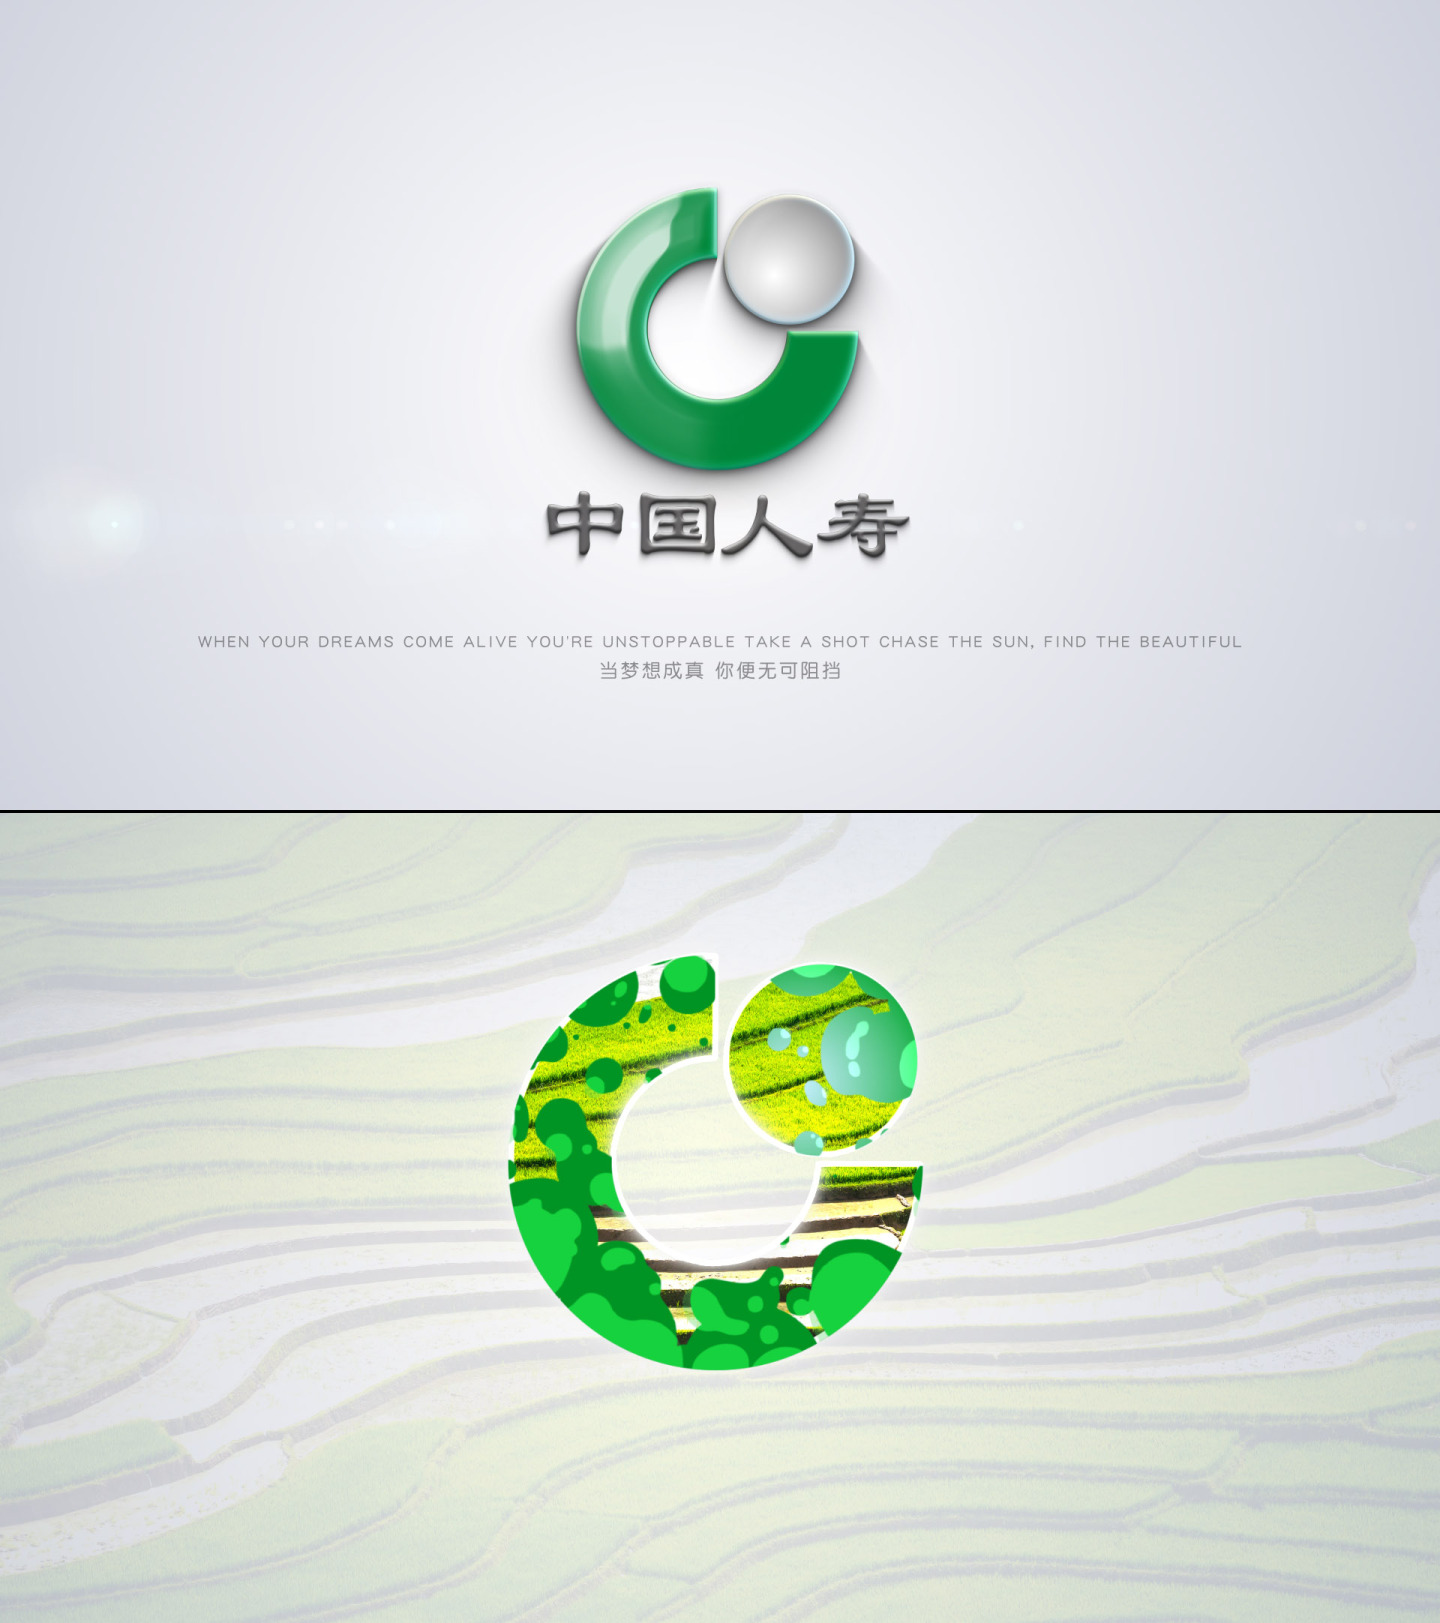 绿色转场落版logo演绎